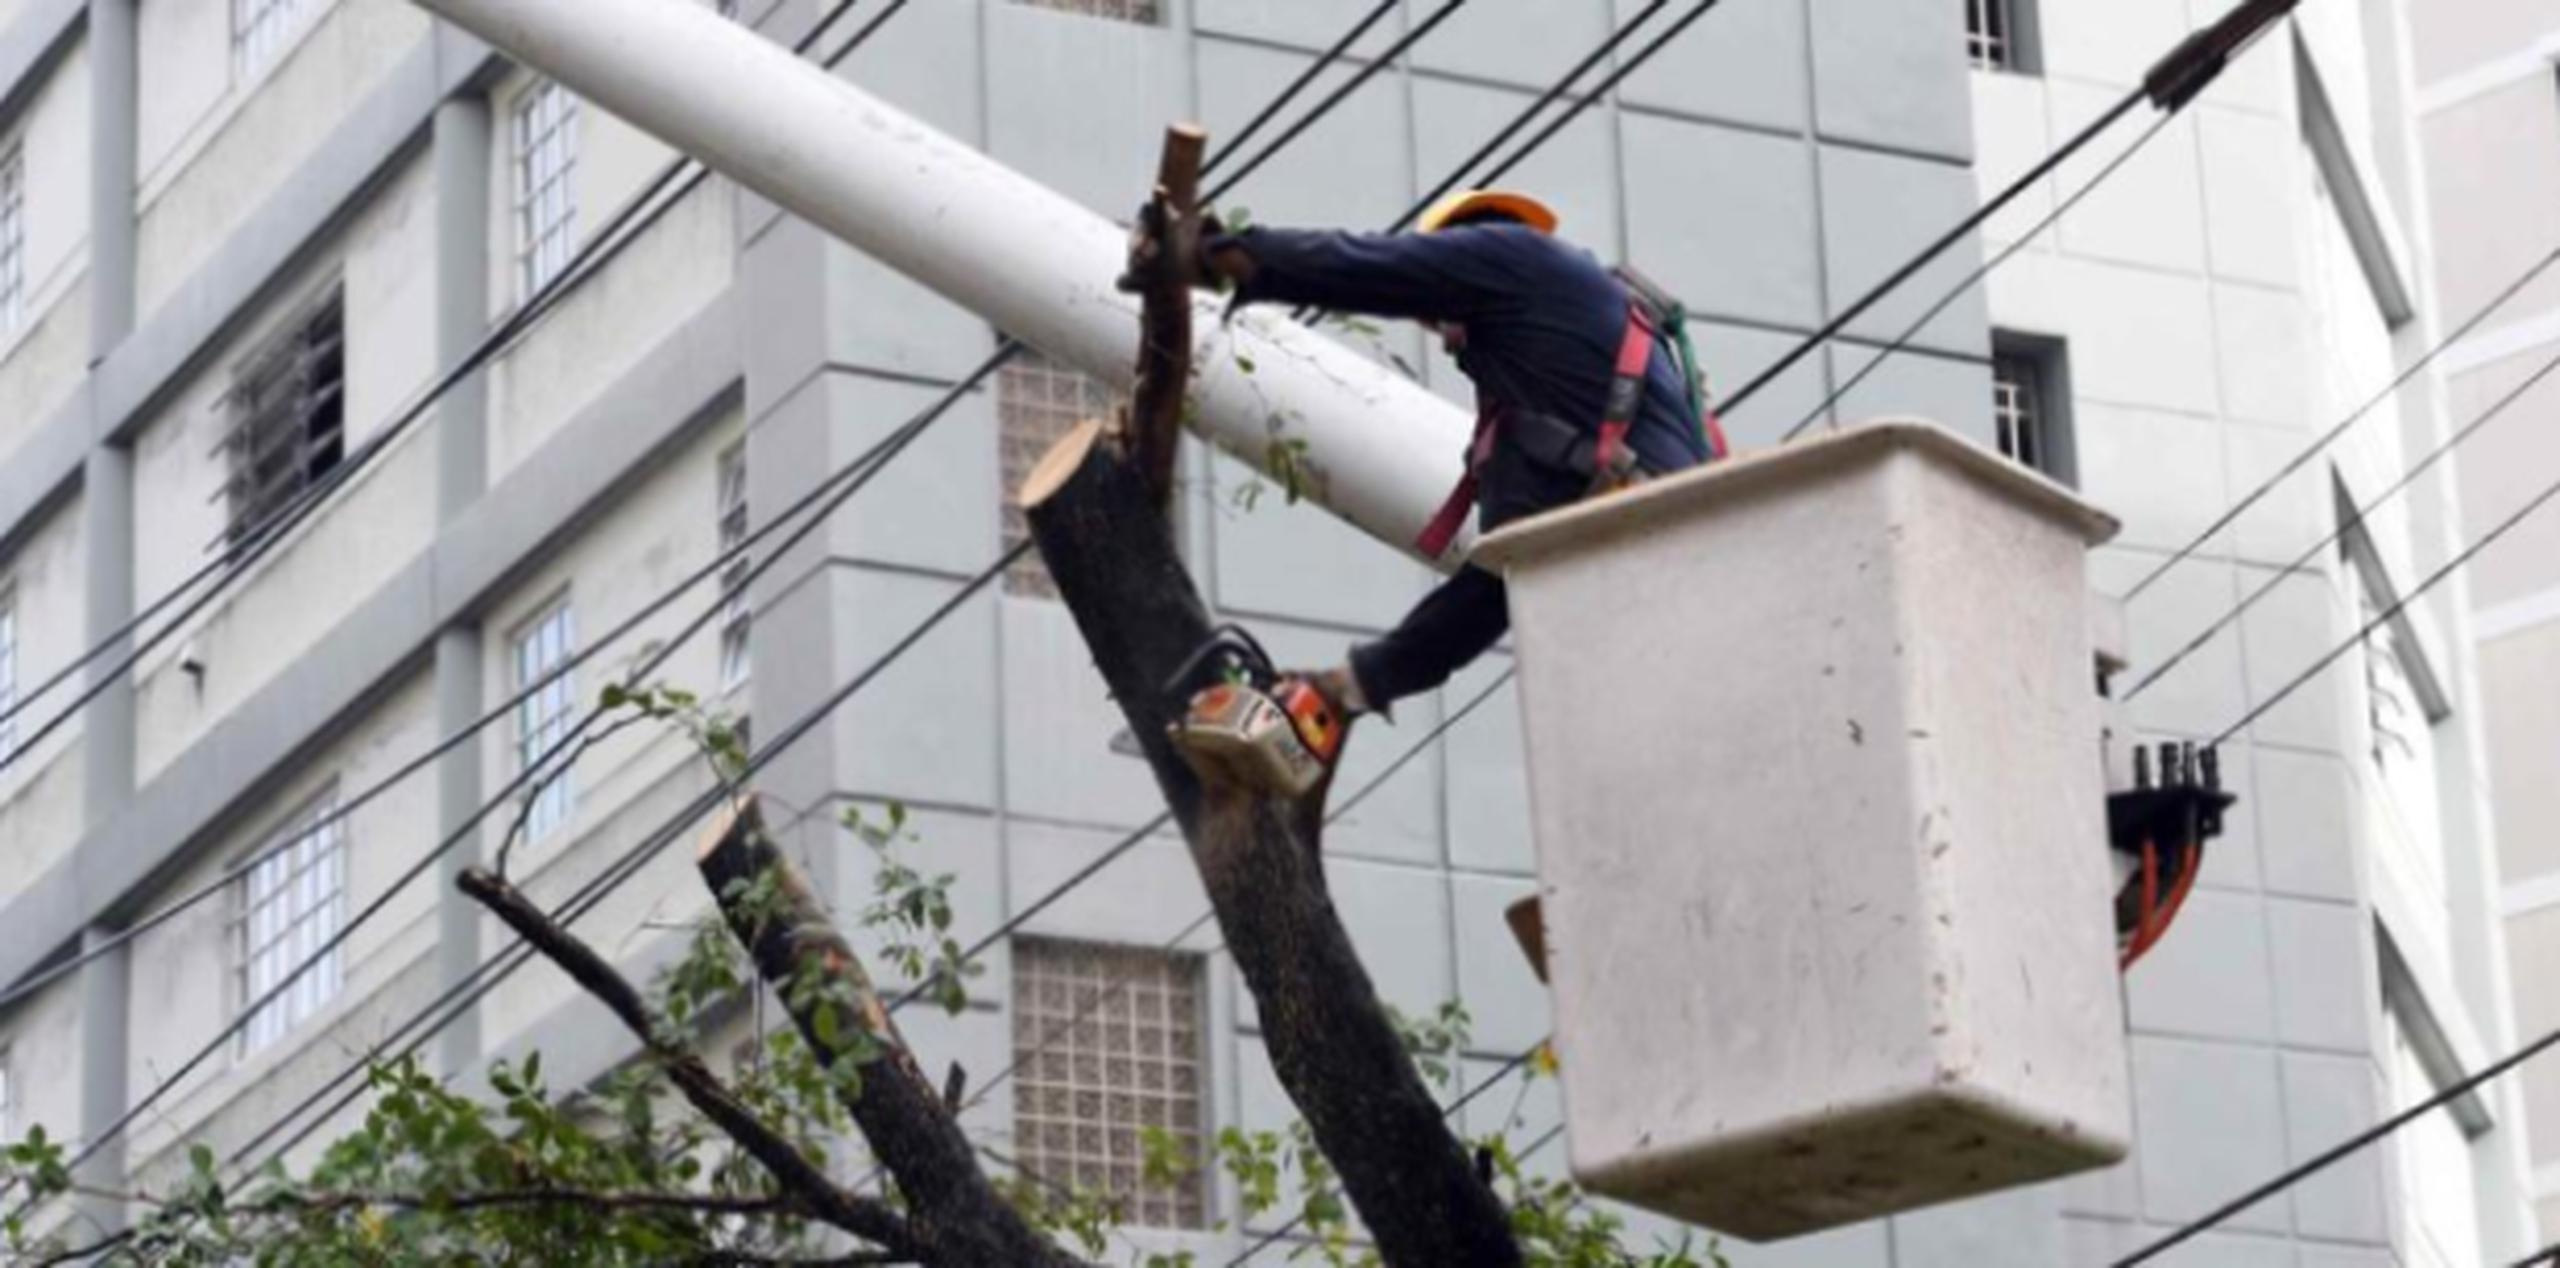 Brigadas de empleados de la Utier comenzaron a trabajar arduamente podando ramas de árboles que cayeron sobre líneas de electricidad. (andre.kang@gfrmedia.com)